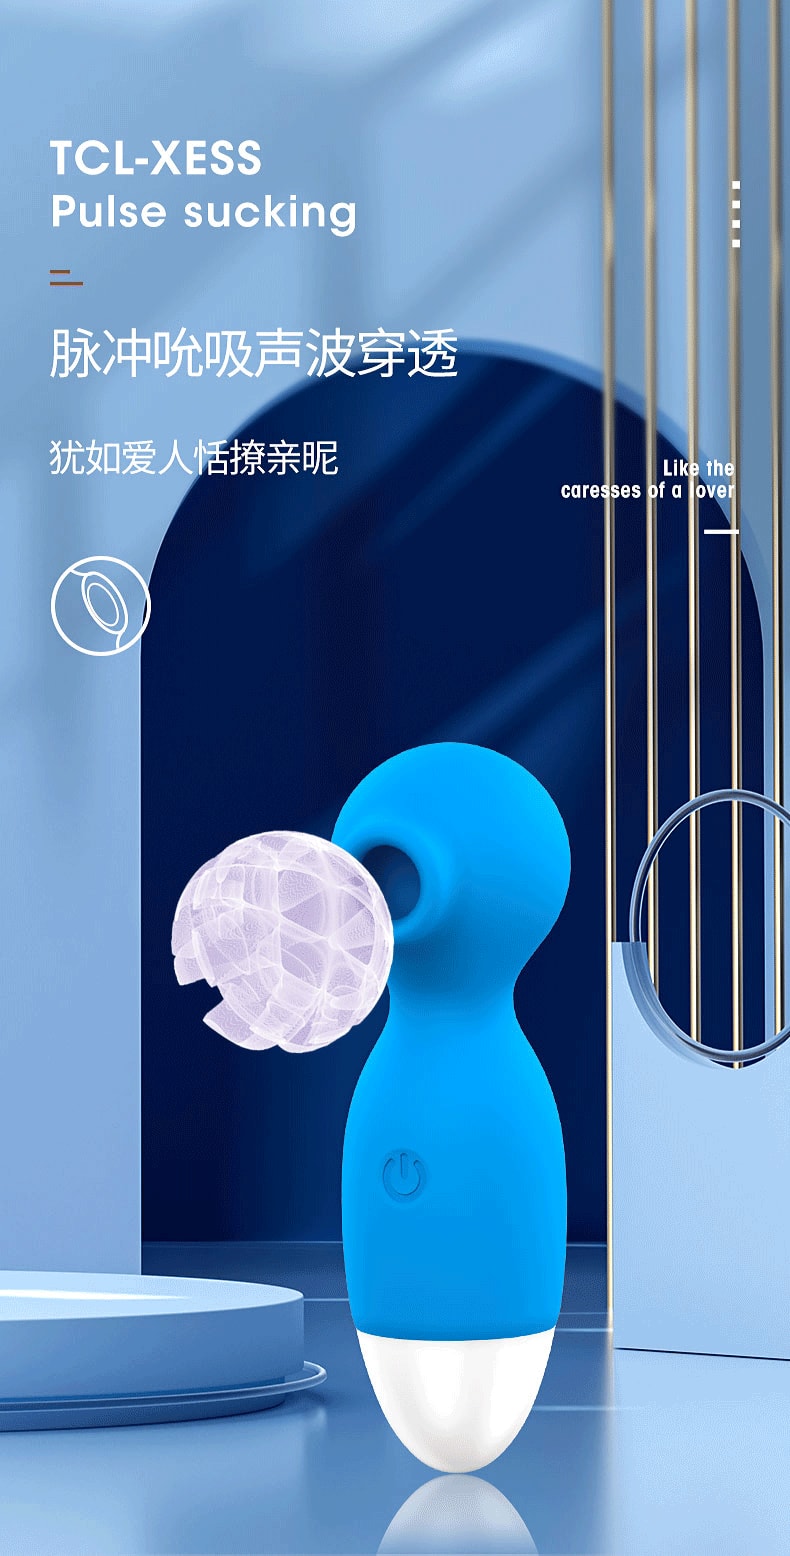 【中国直邮】诺贝趣 女用小豌豆USB多频震动棒 情趣用品 蓝色款